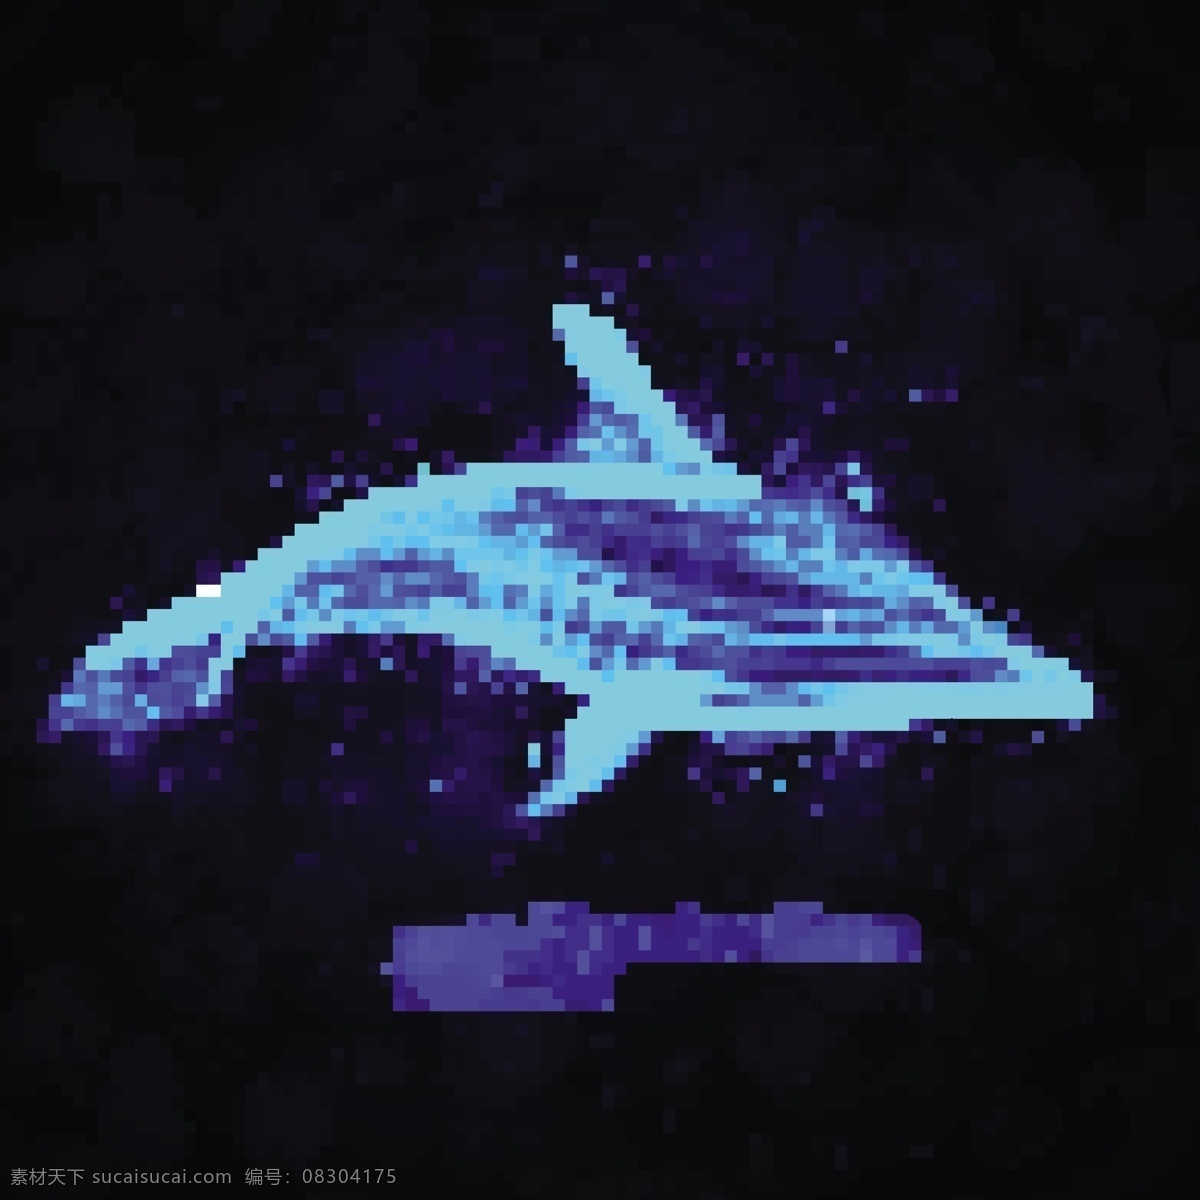 炫酷光影海豚 鱼类动物 海豚 光影海豚 光影 蓝色光影 创意海豚 海洋生物 黑色